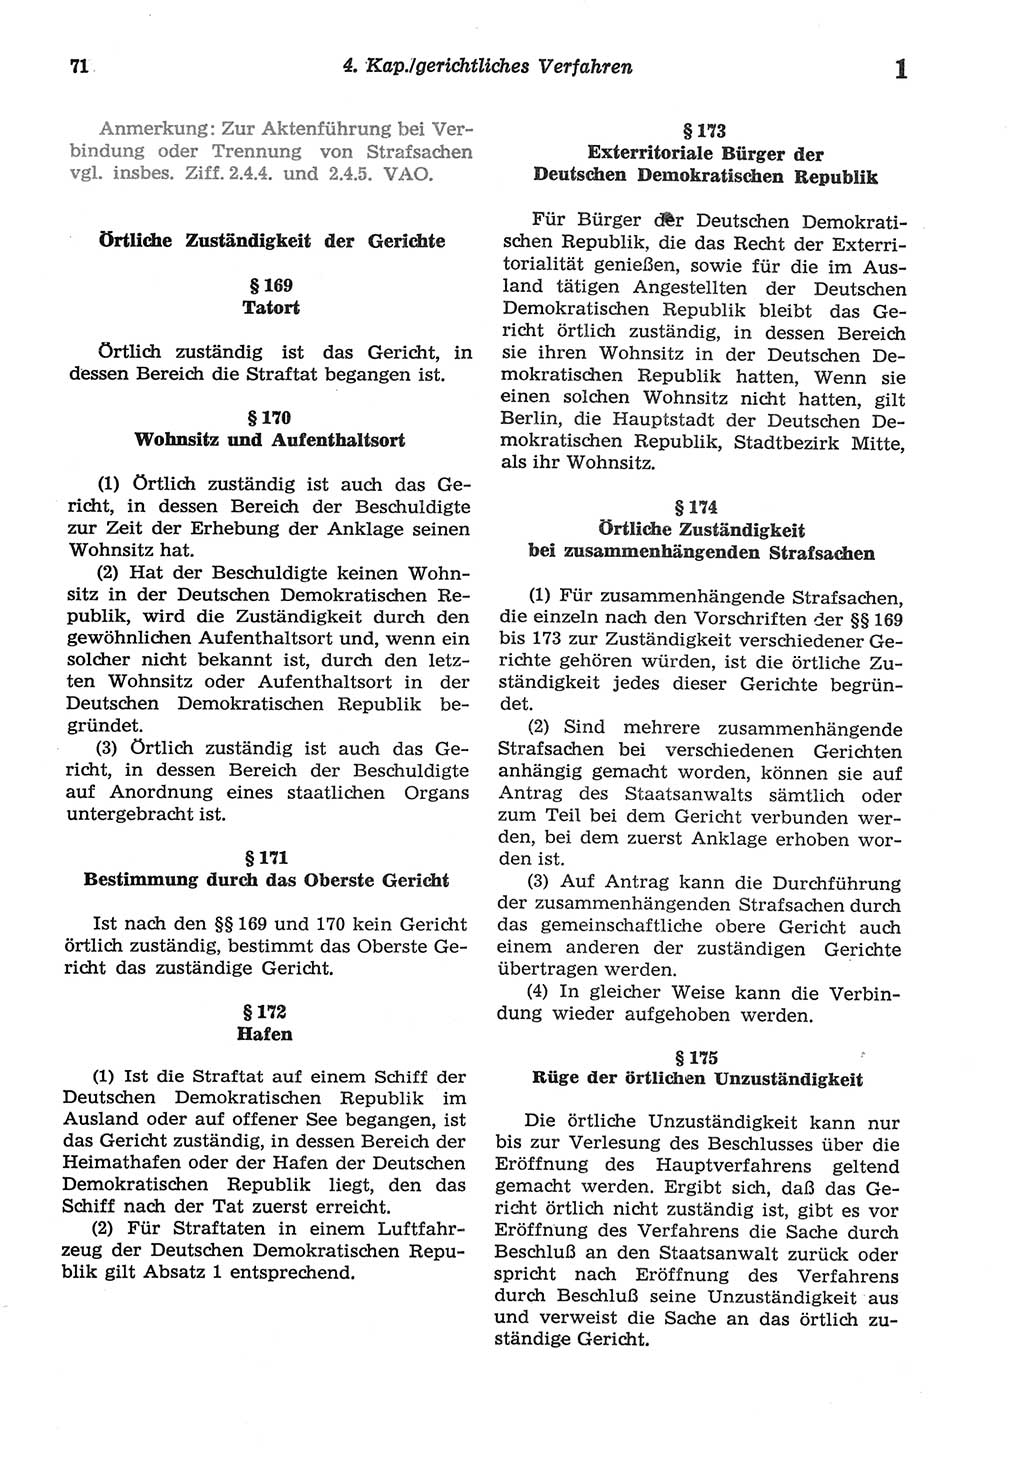 Strafprozeßordnung (StPO) der Deutschen Demokratischen Republik (DDR) sowie angrenzende Gesetze und Bestimmungen 1977, Seite 71 (StPO DDR Ges. Best. 1977, S. 71)